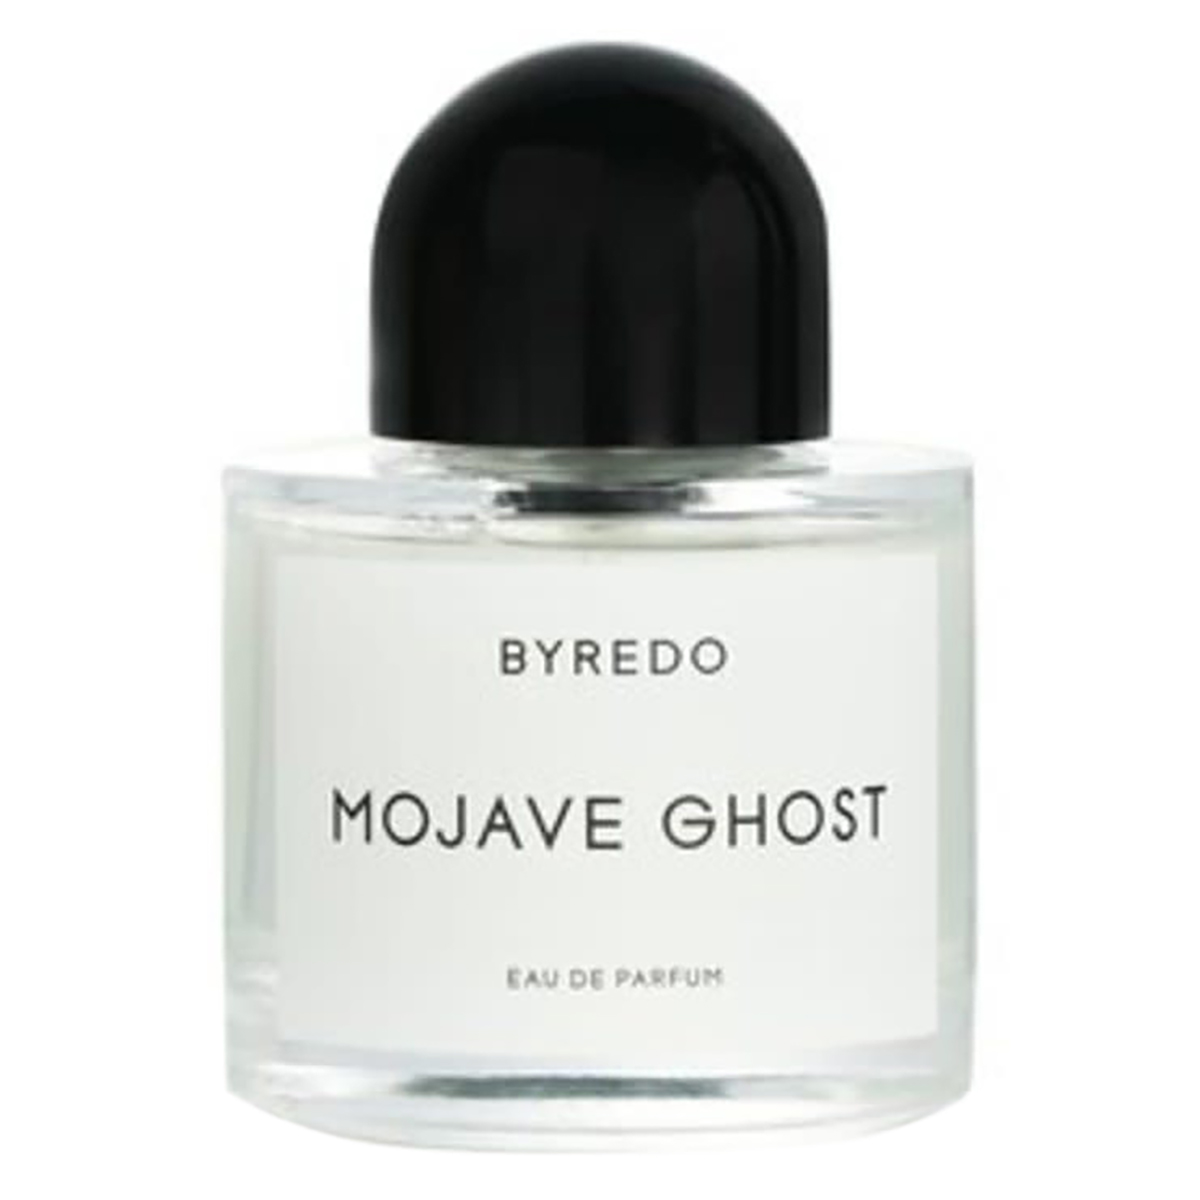 Byredo Unisex Mojave Ghost Edp Spray 3.4 oz Fragrances 7340032860740 In N/a